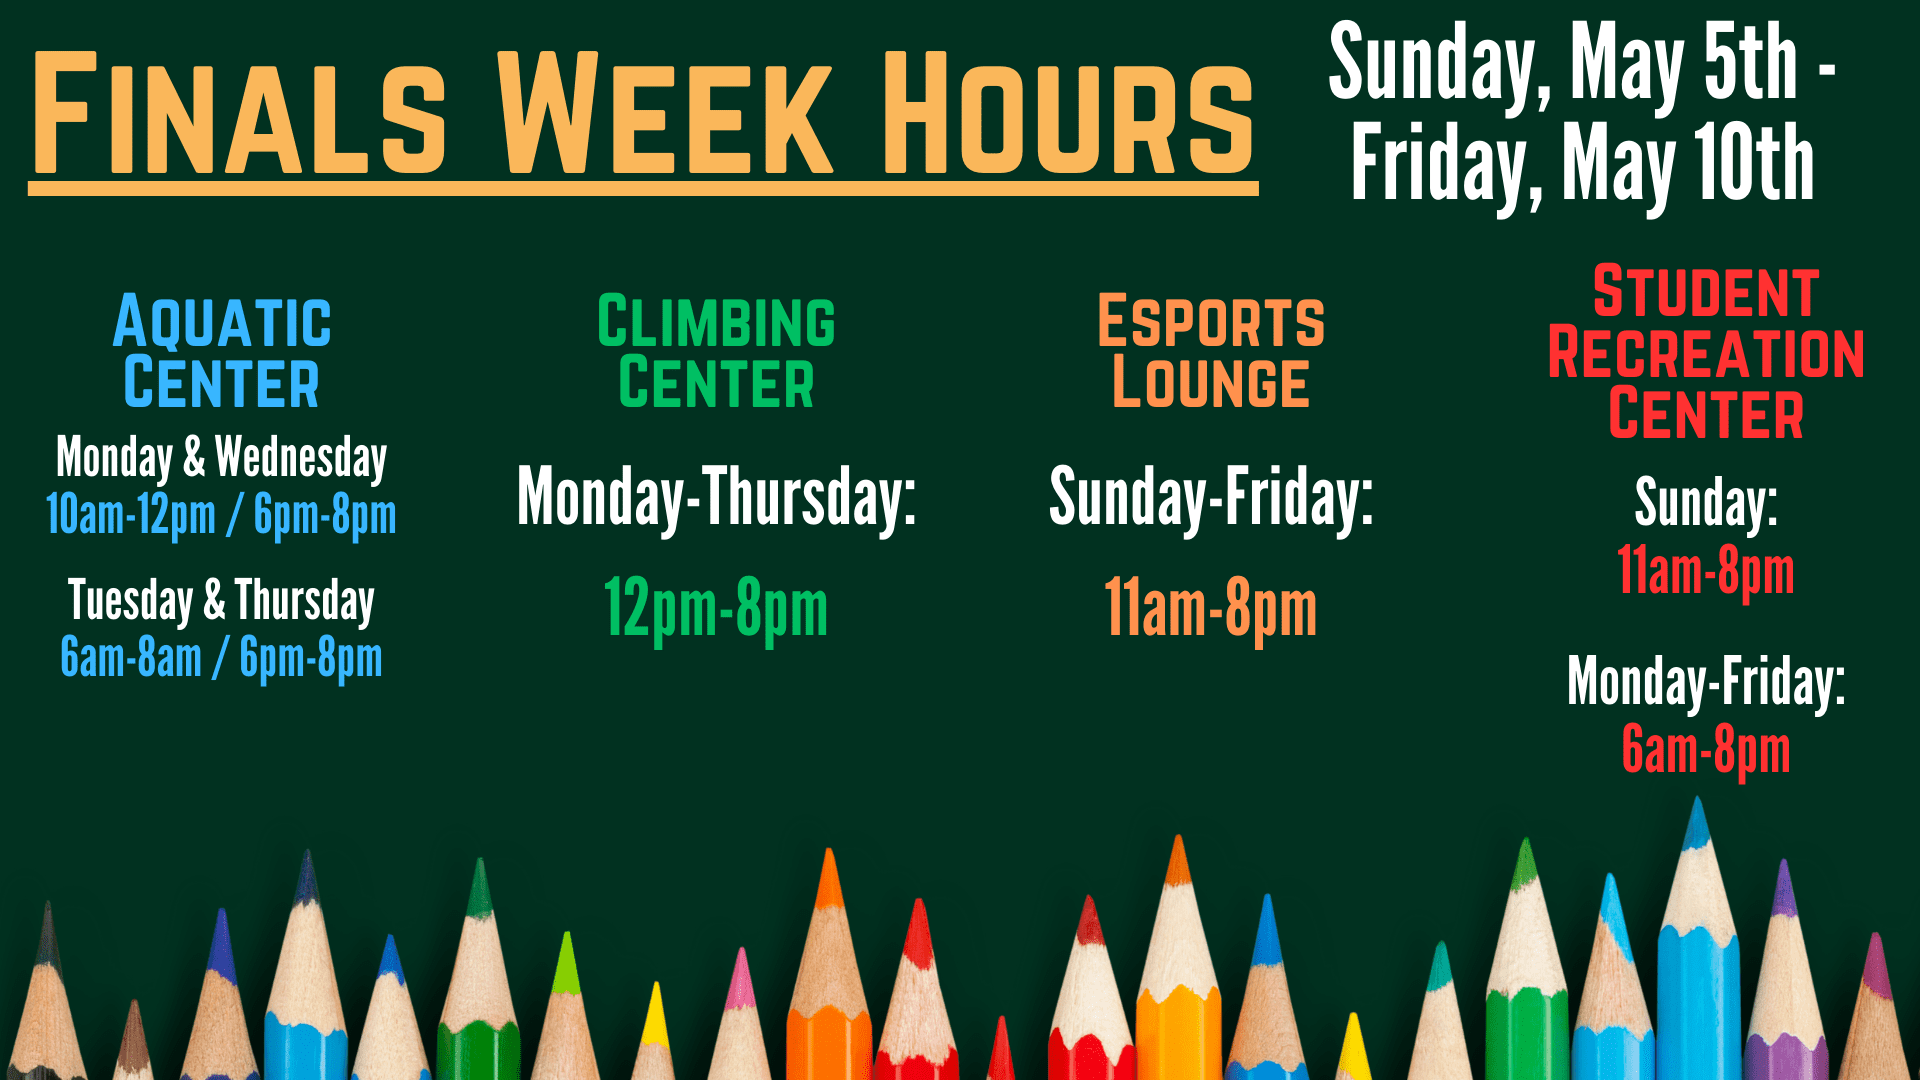 Schedule of campus rec hours during finals week